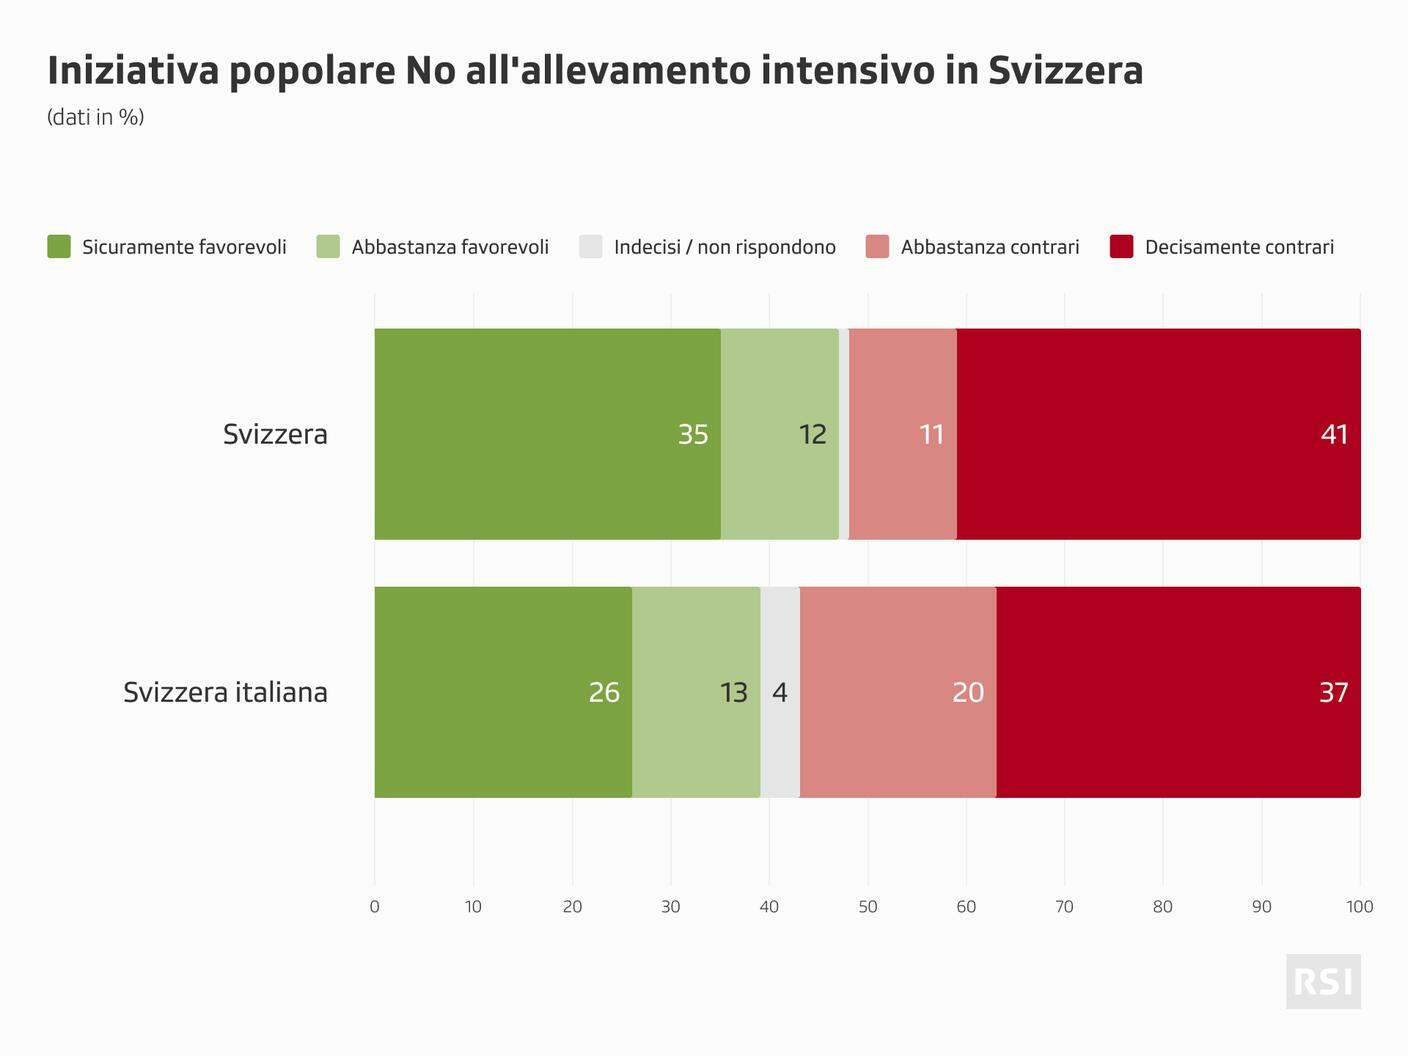 Sondaggio SSR - Iniziativa popolare "No all'allevamento intensivo in Svizzera"